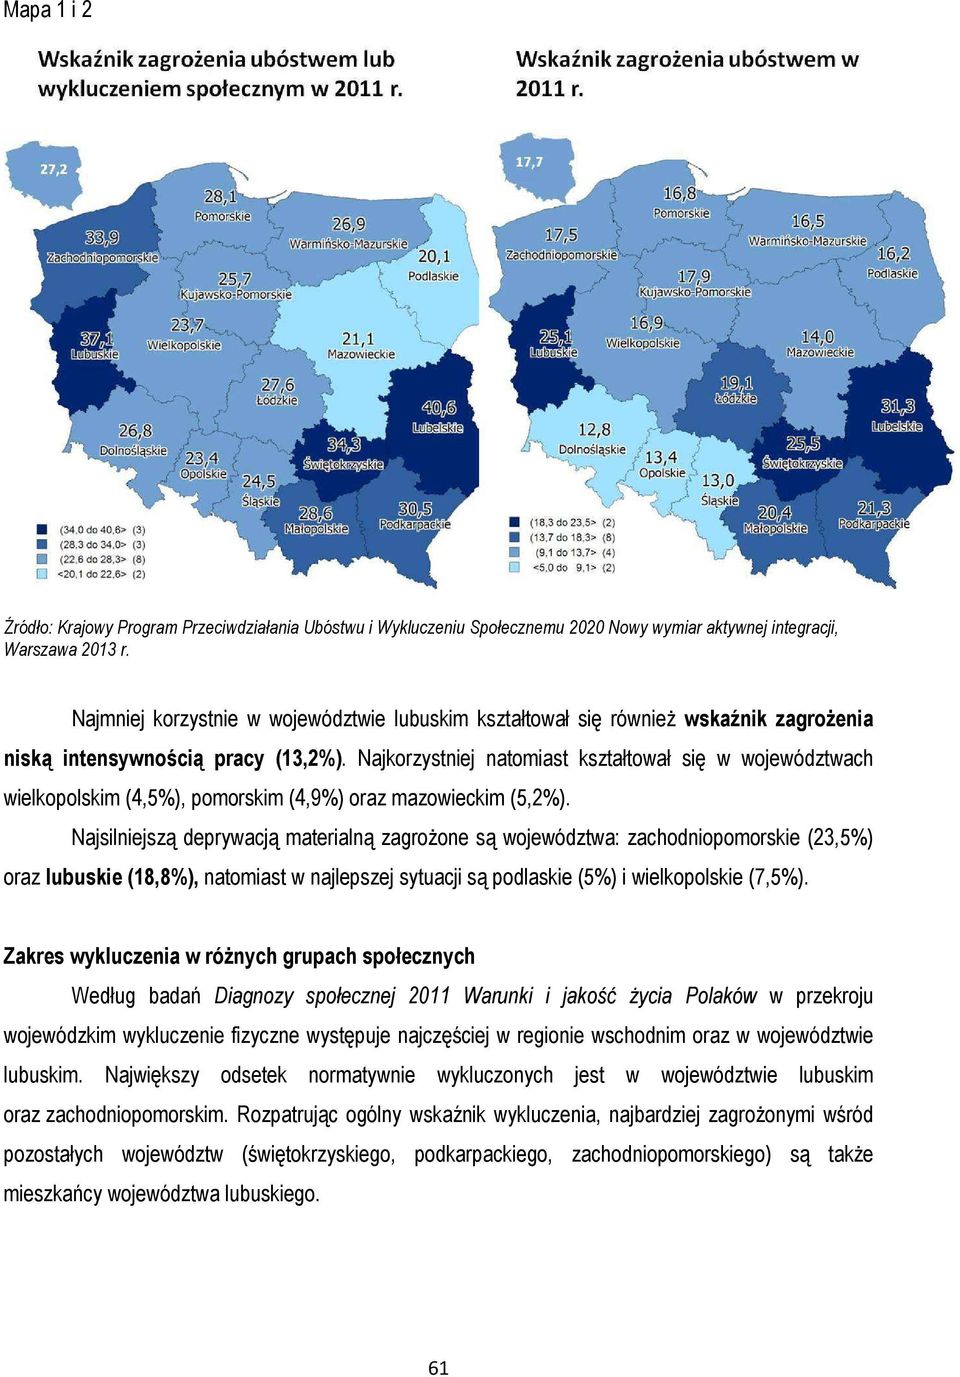 Najkorzystniej natomiast kształtował się w województwach wielkopolskim (4,5%), pomorskim (4,9%) oraz mazowieckim (5,2%).